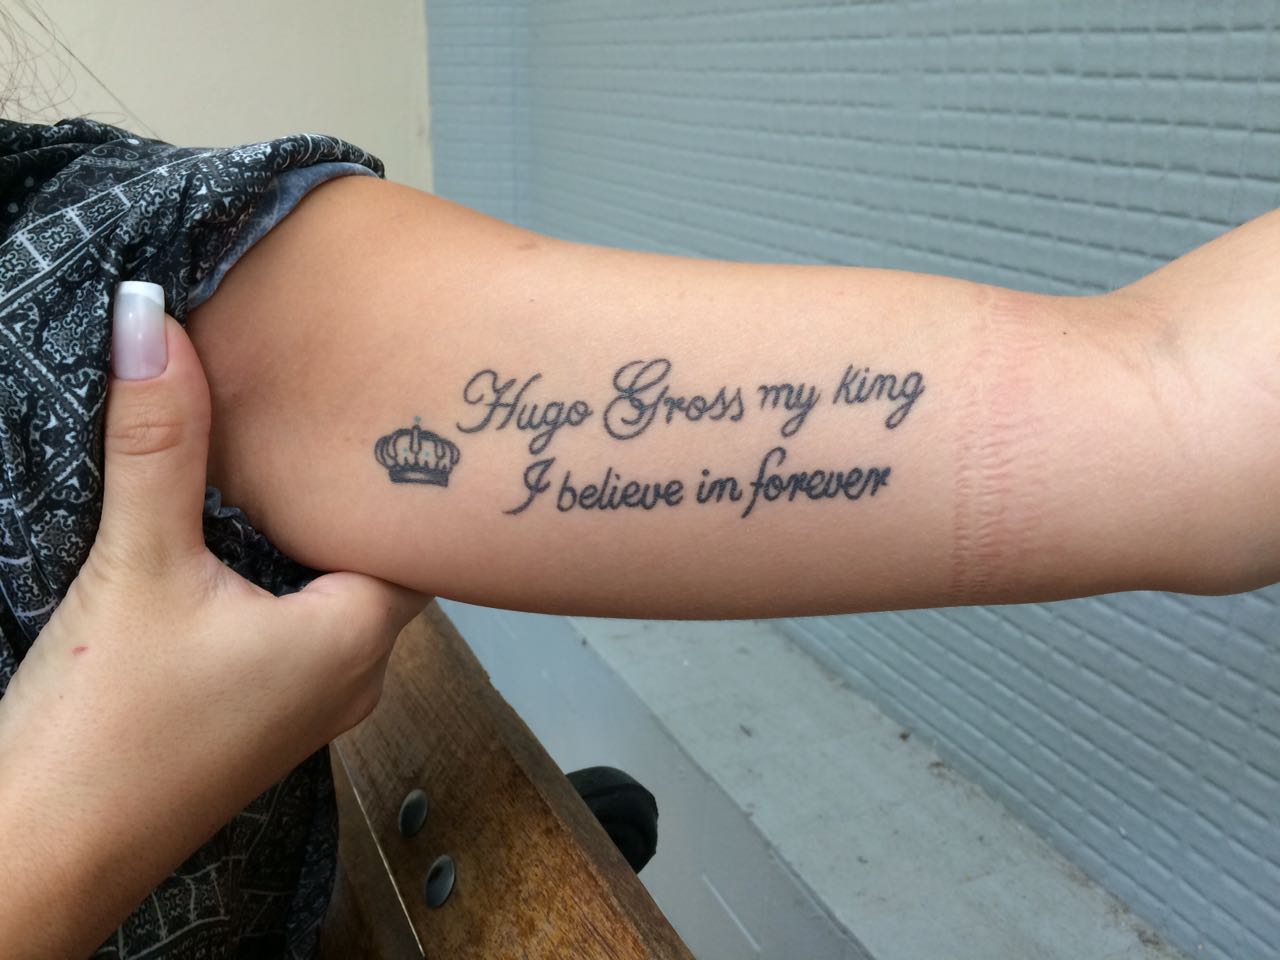 Jéssica França exibe tatuagem em homenagem ao ex, Hugo Gross Foto: Arquivo Pessoal/Imagem ilustrativa